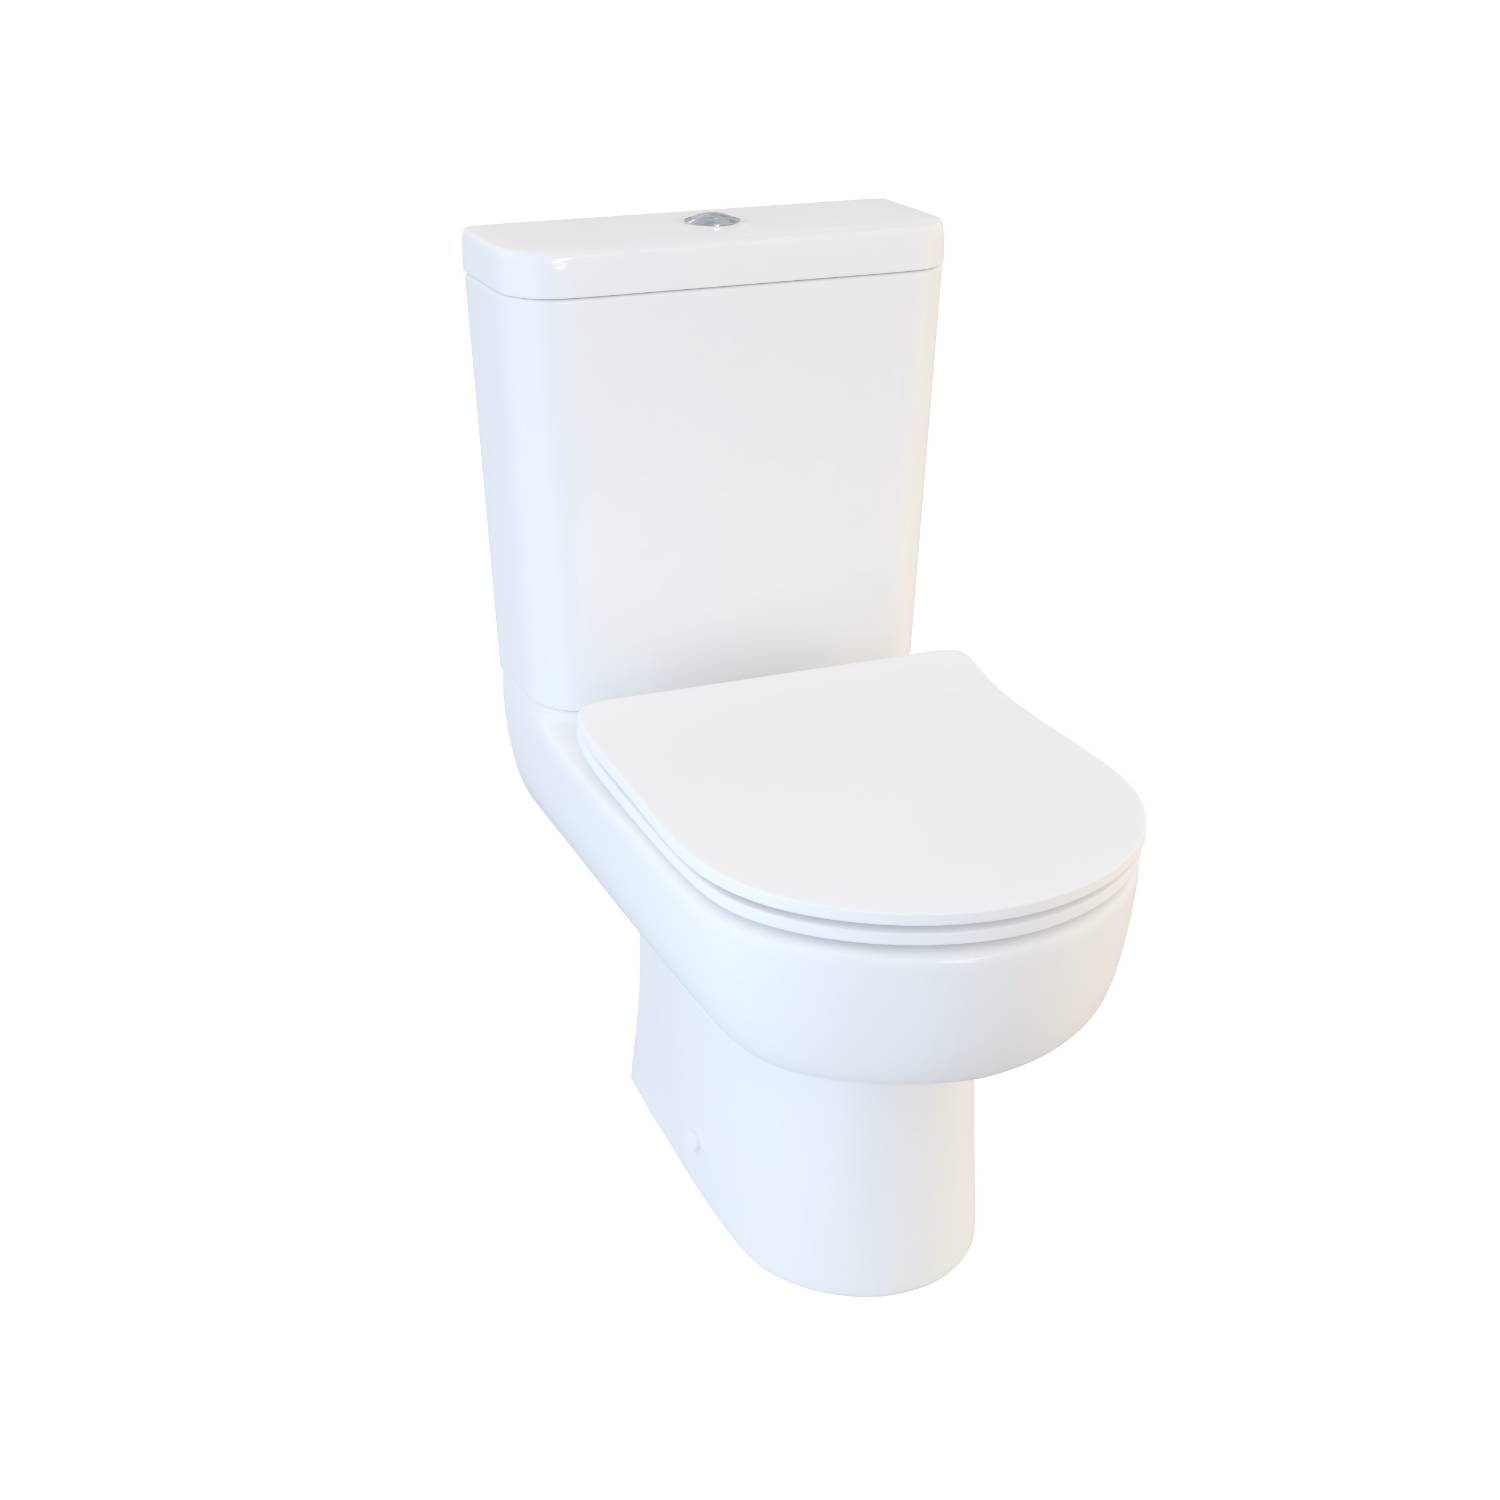 Designer Series 3 WC set and softclose skinny seat